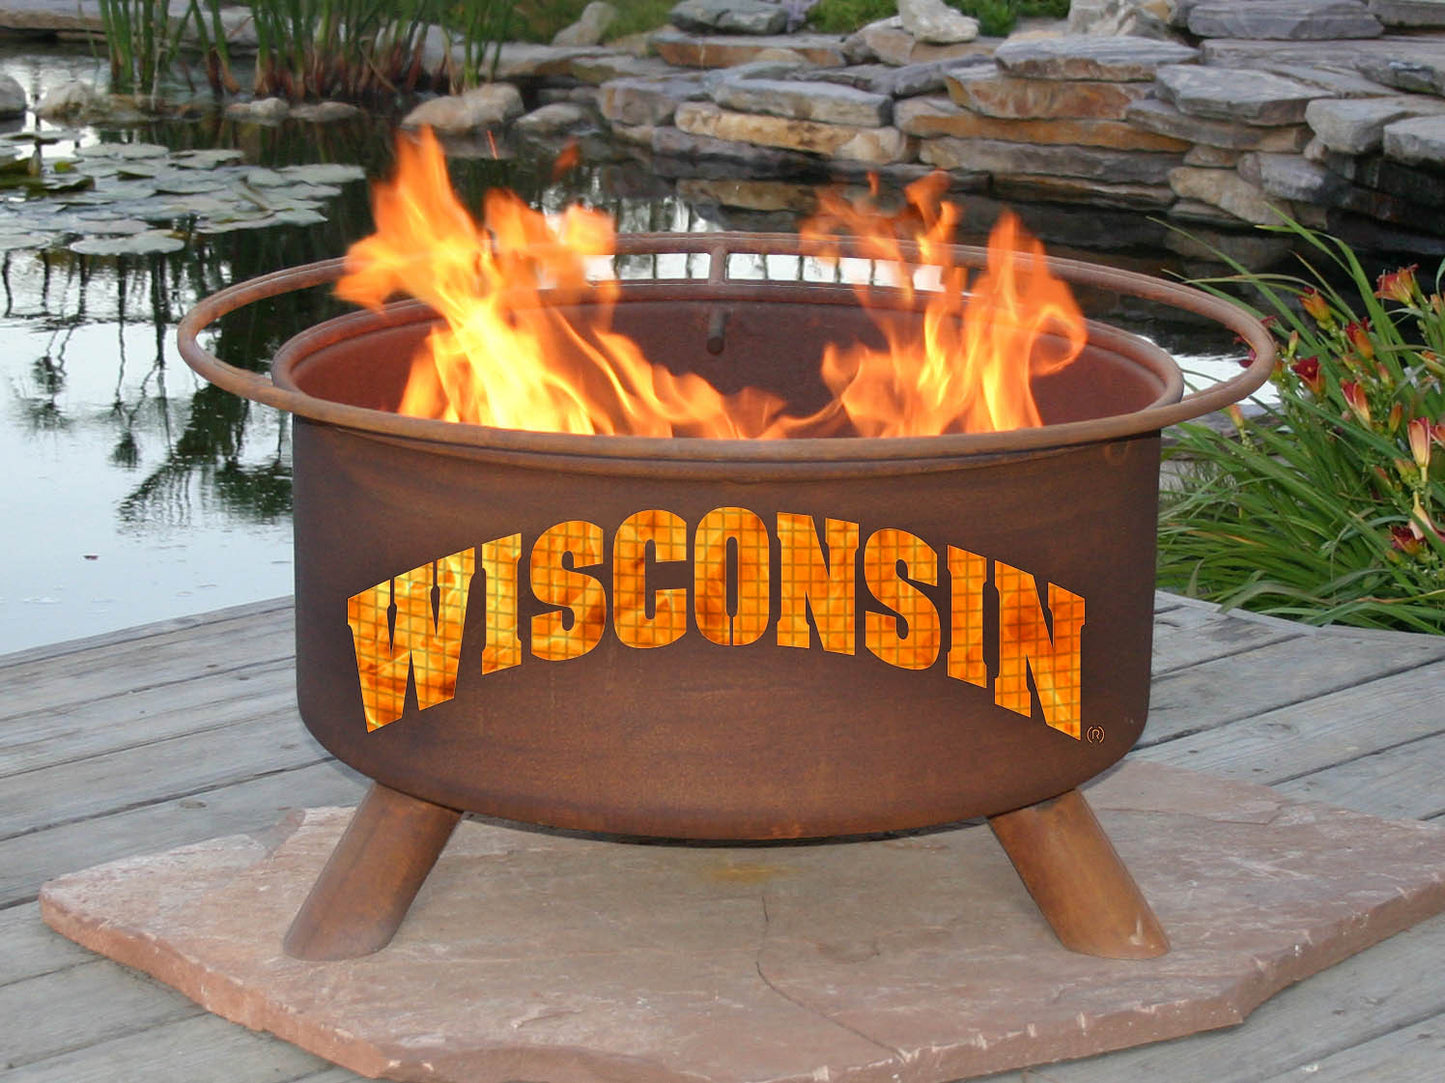 Collegiate Wisconsin Logo Fire Pit, Fireplace - Yardify.com